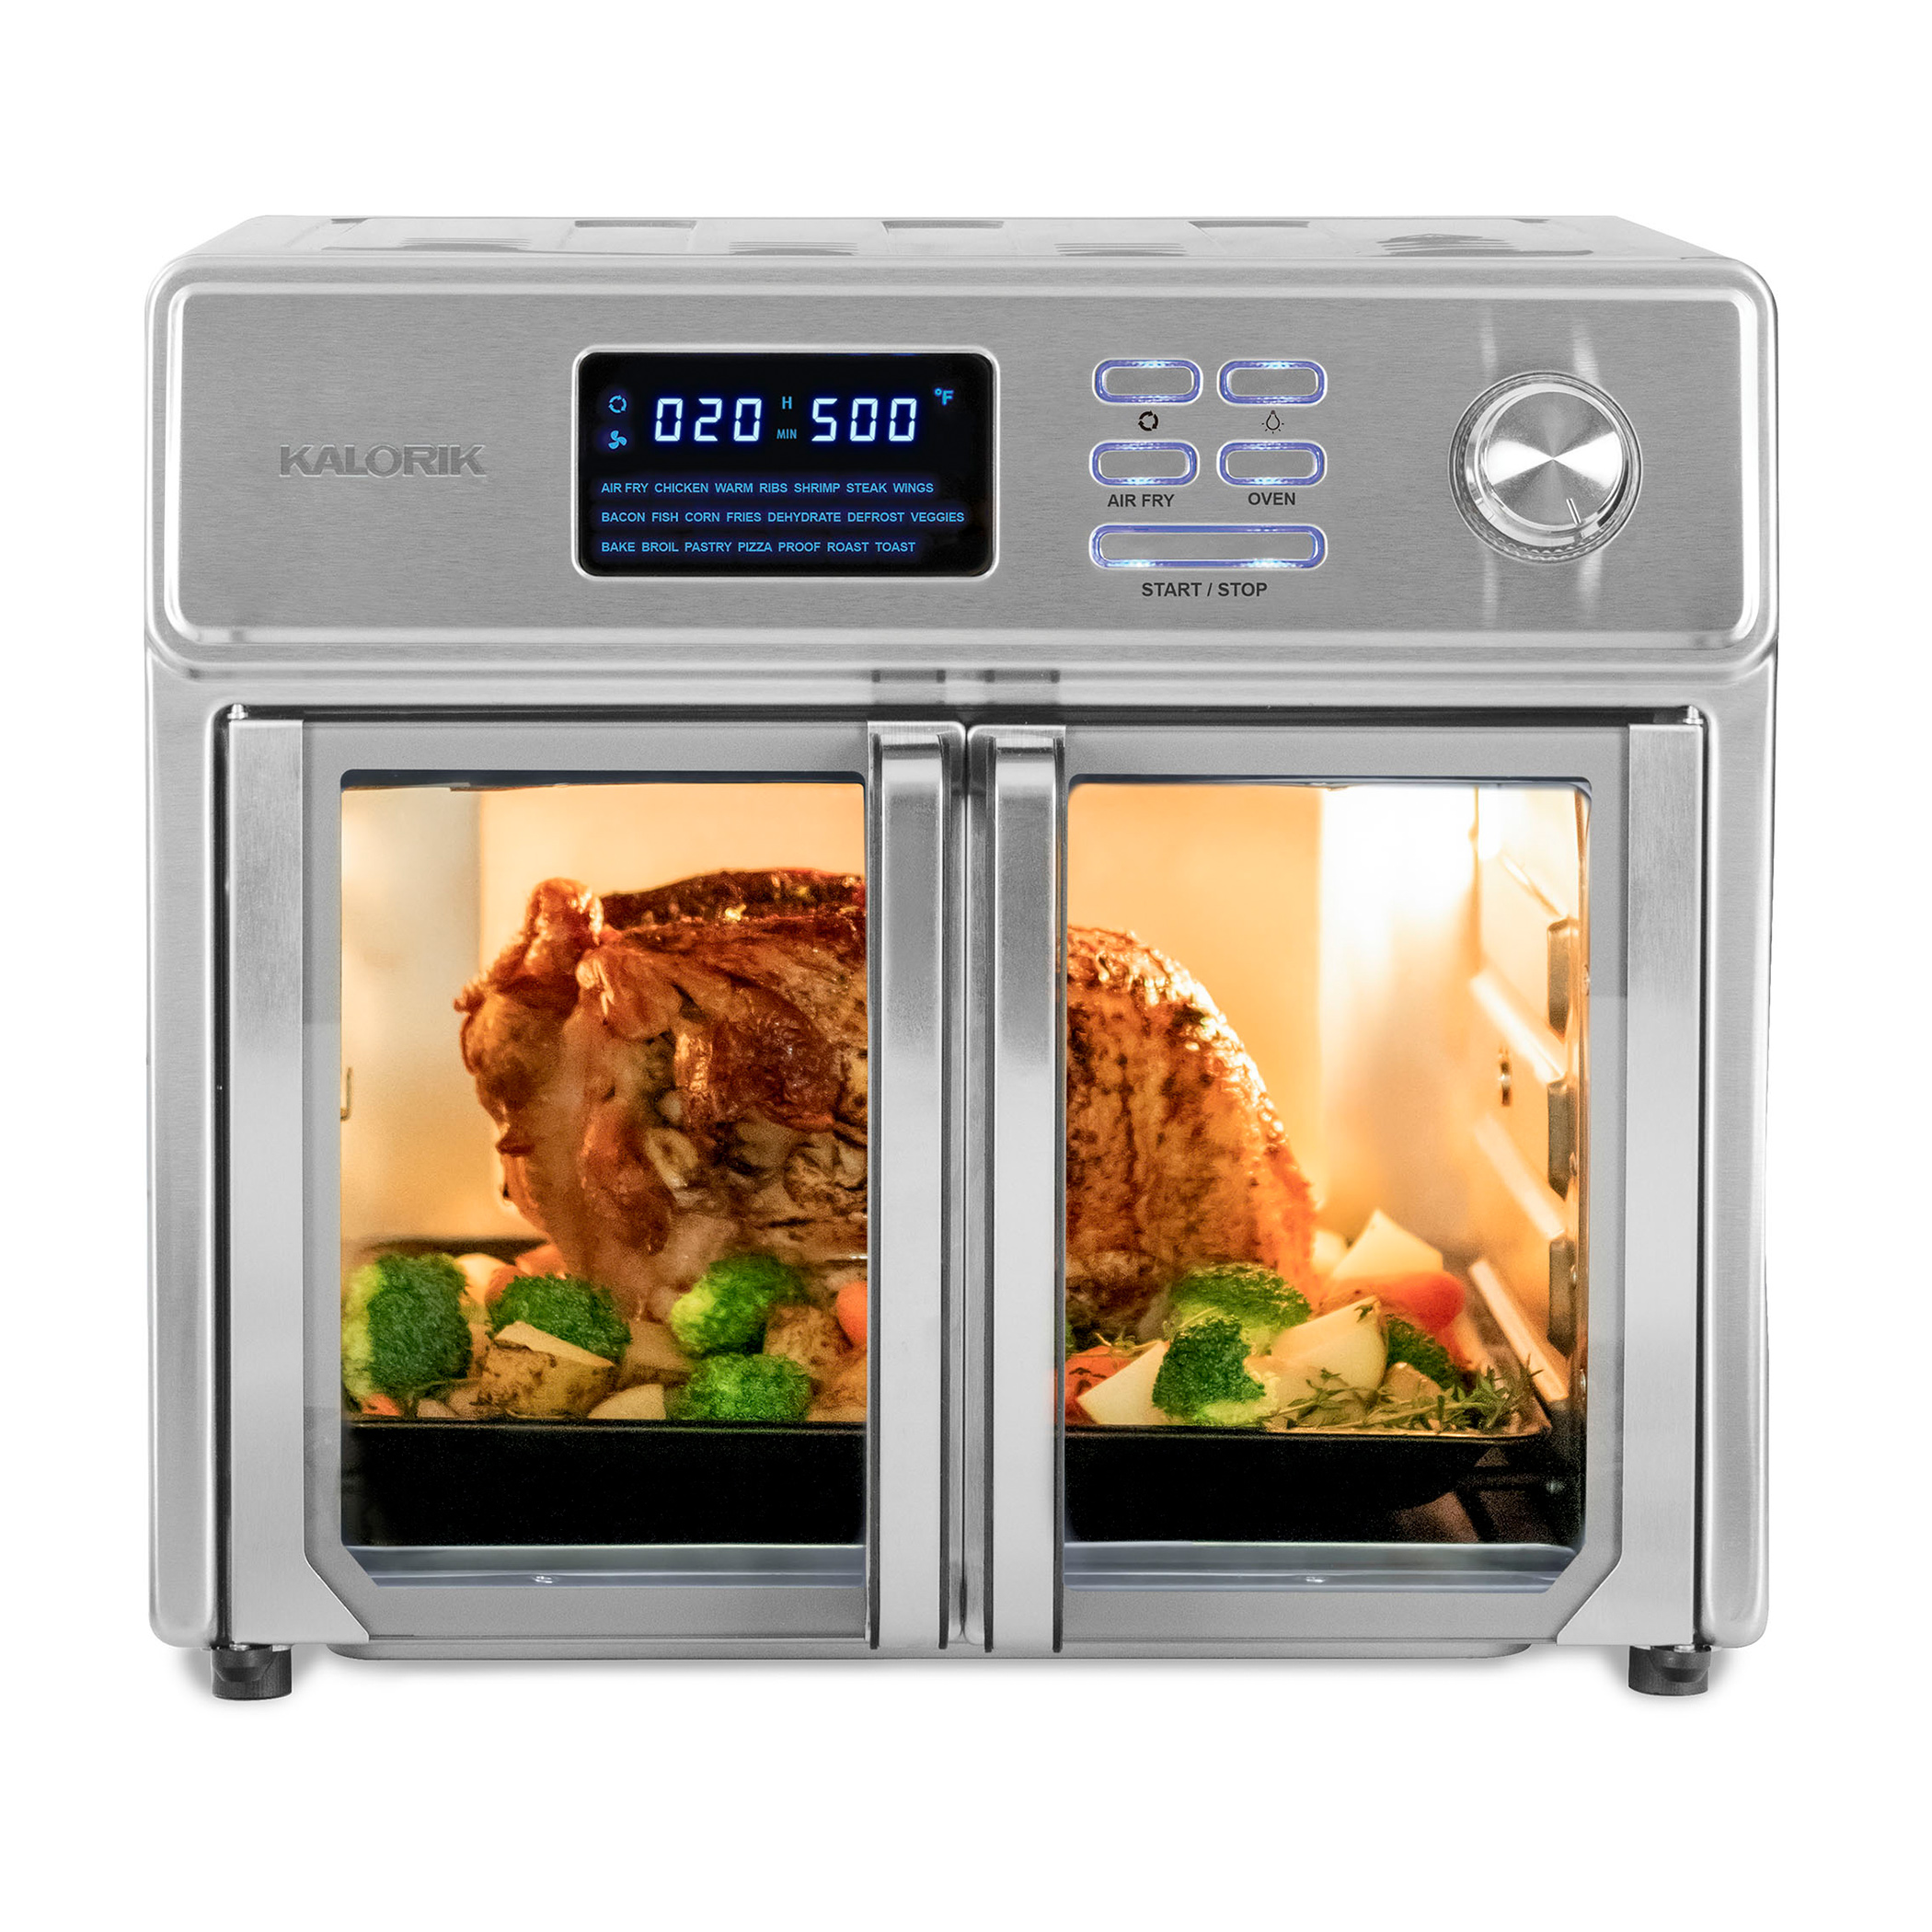 Kalorik® MAXX® 26 Quart Digital Air Fryer Oven AFO 46045 SS - image 1 of 8